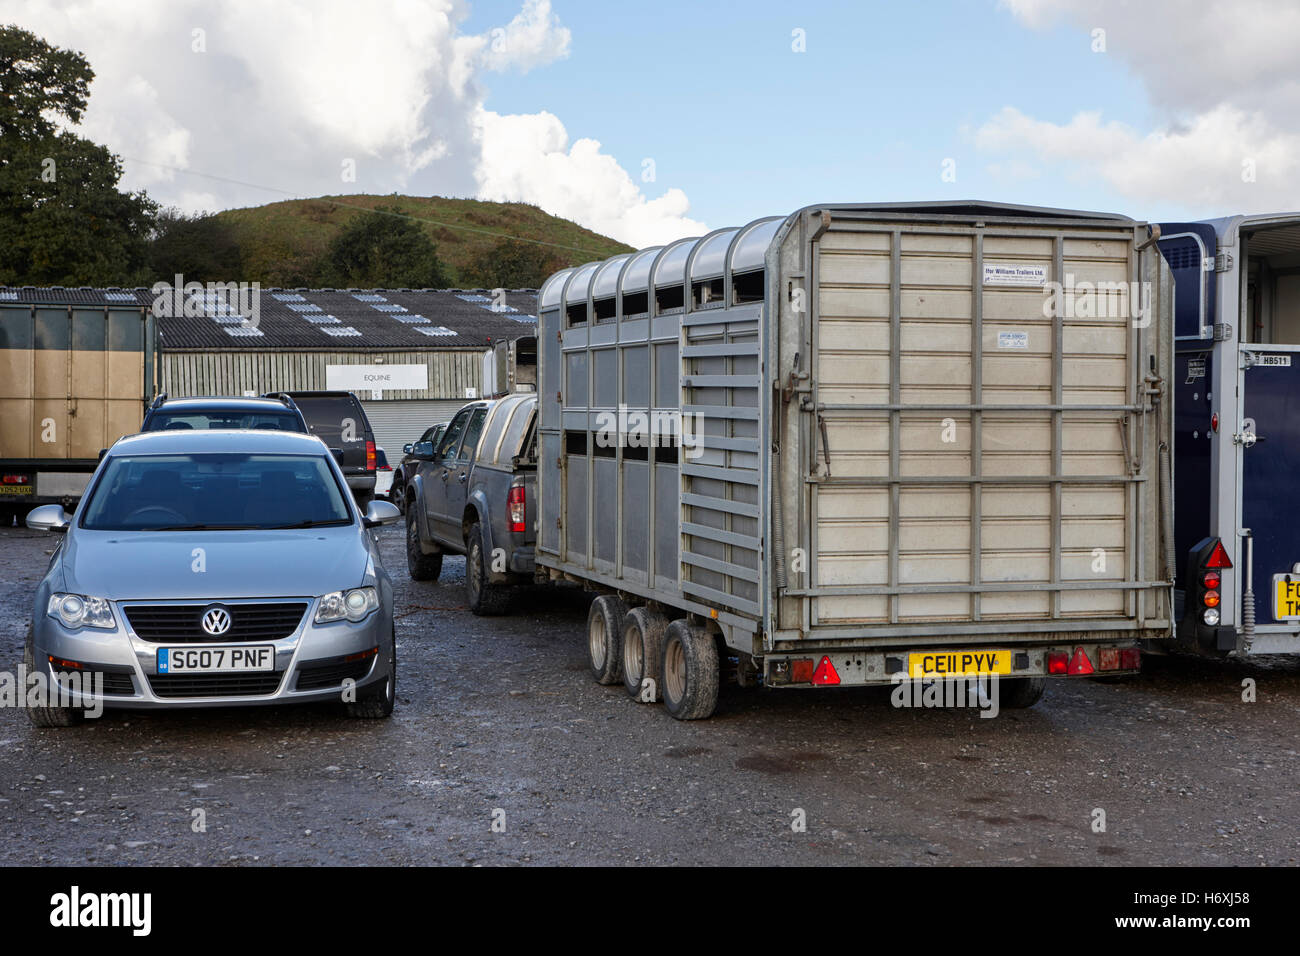 horse transport vehicles at beeston market england uk Stock Photo